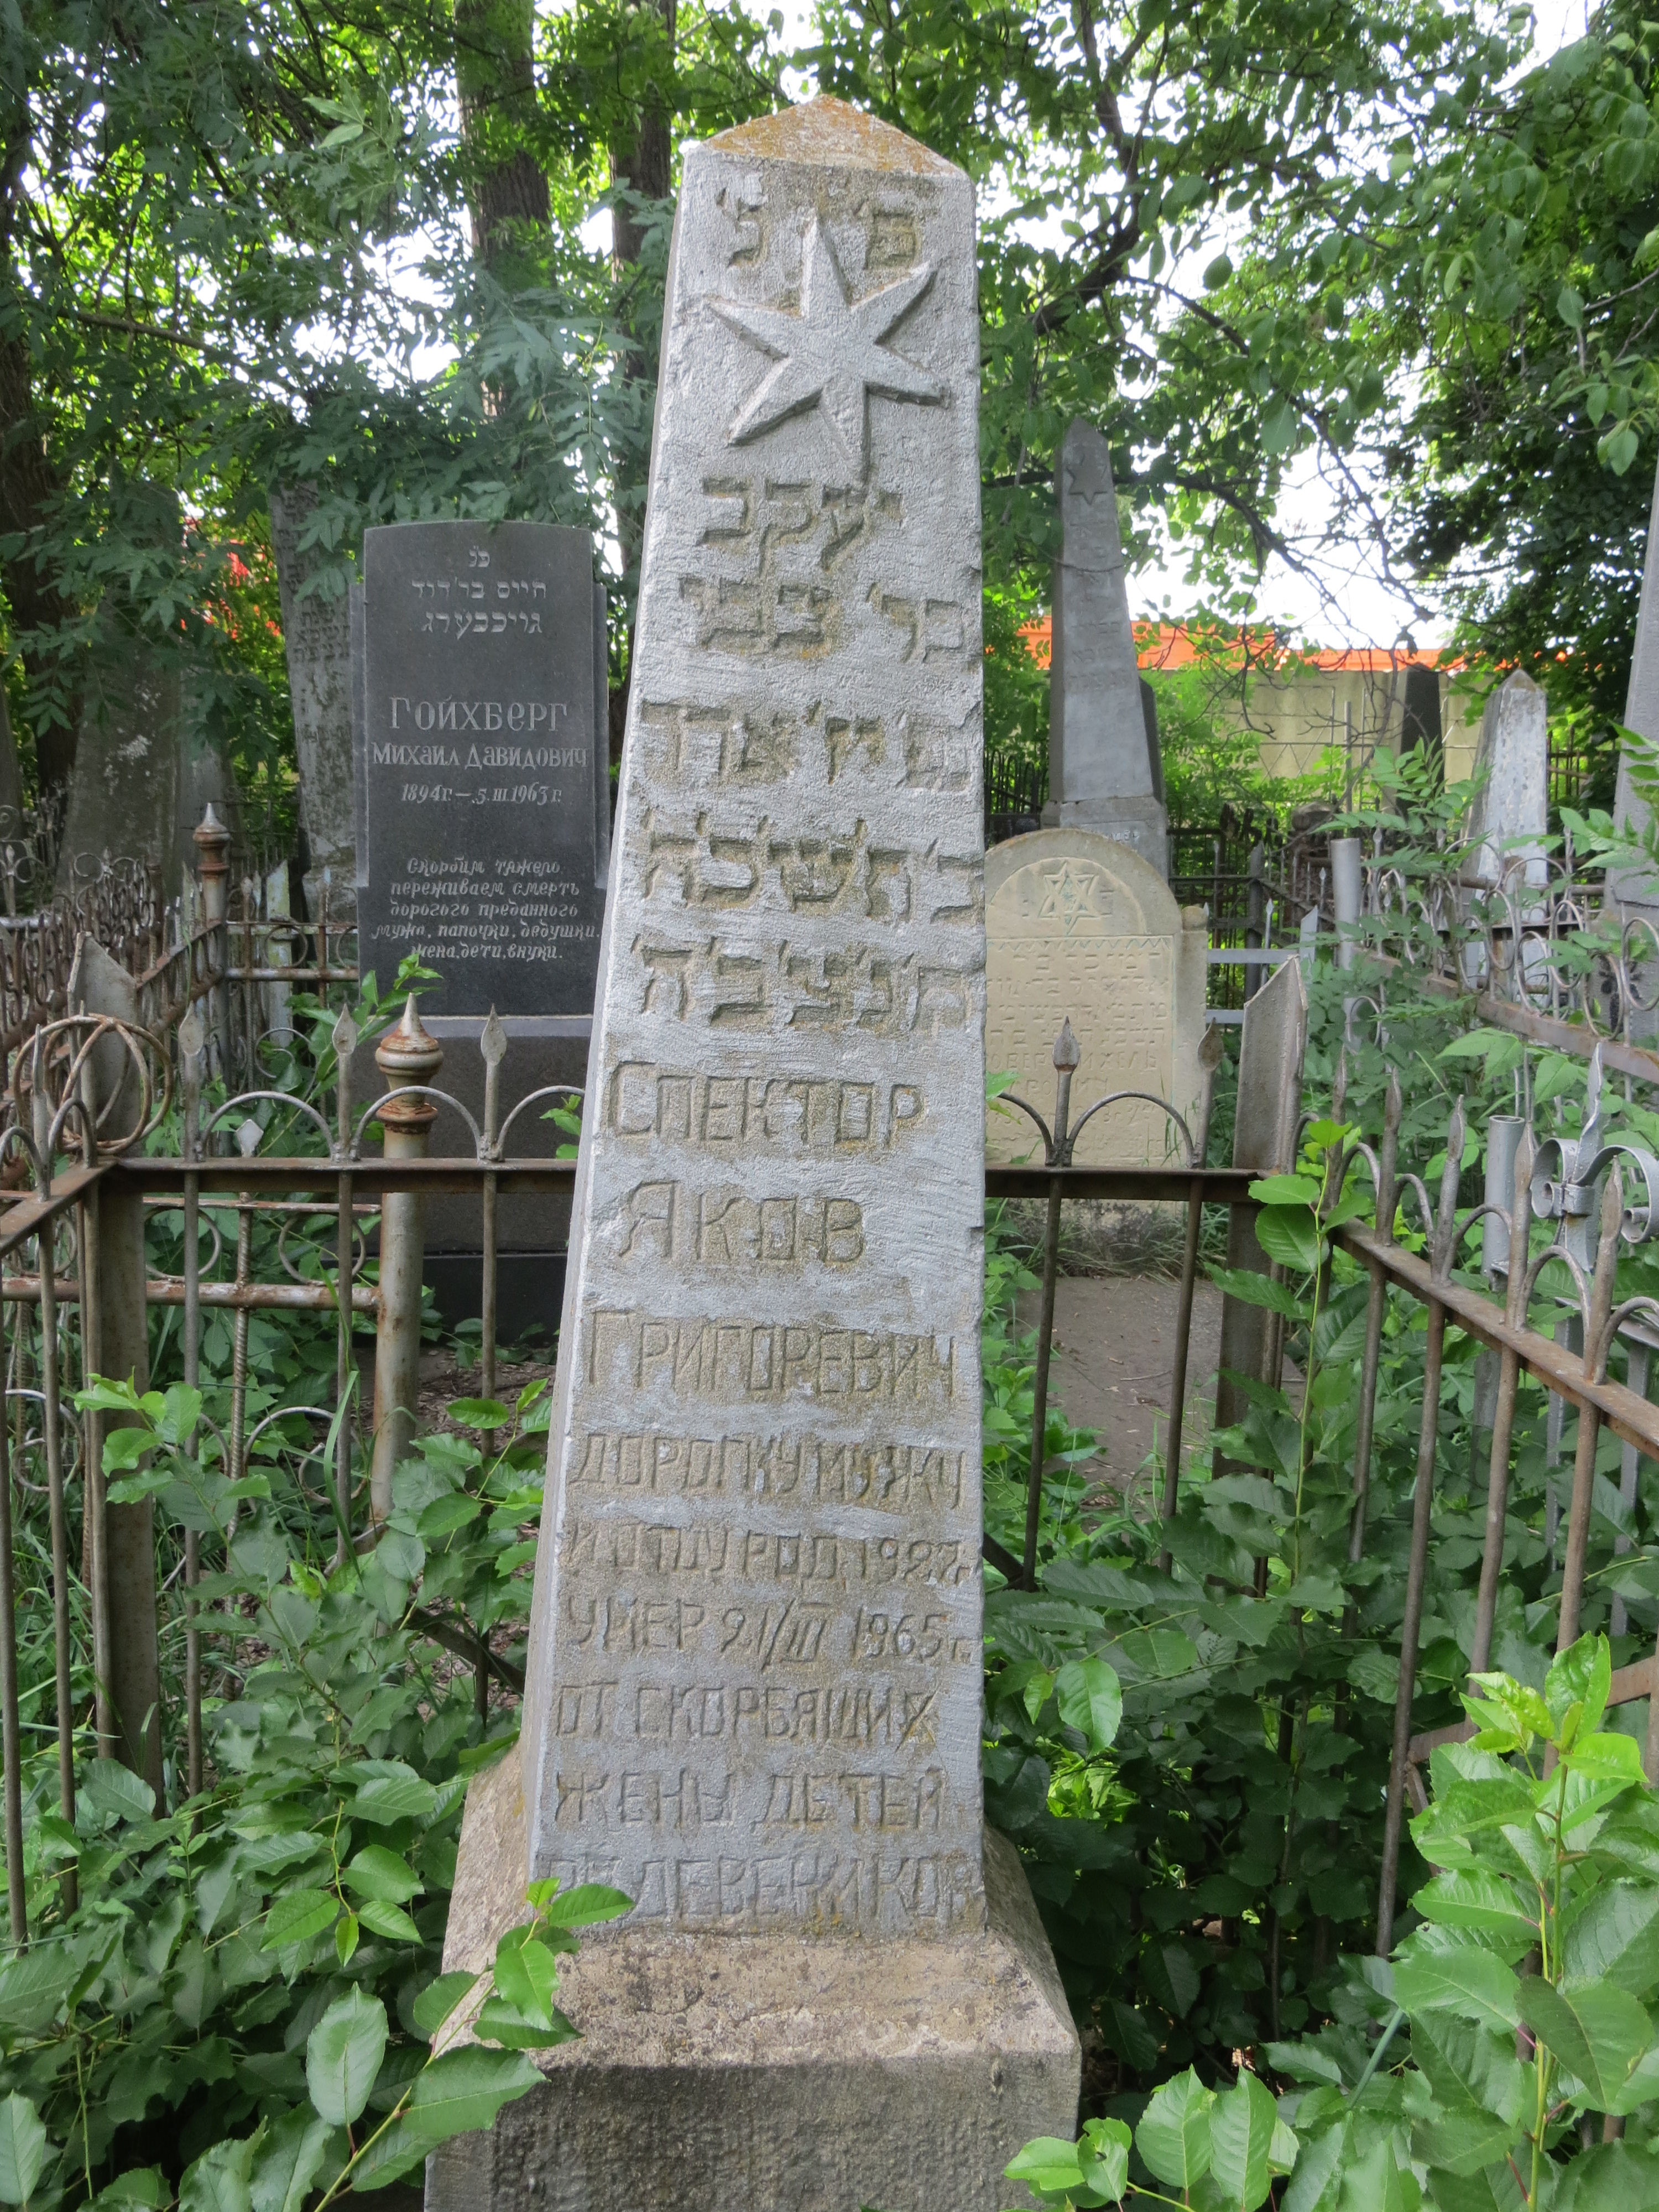 Tombstone of Yakov Ben Tzvi Spektor